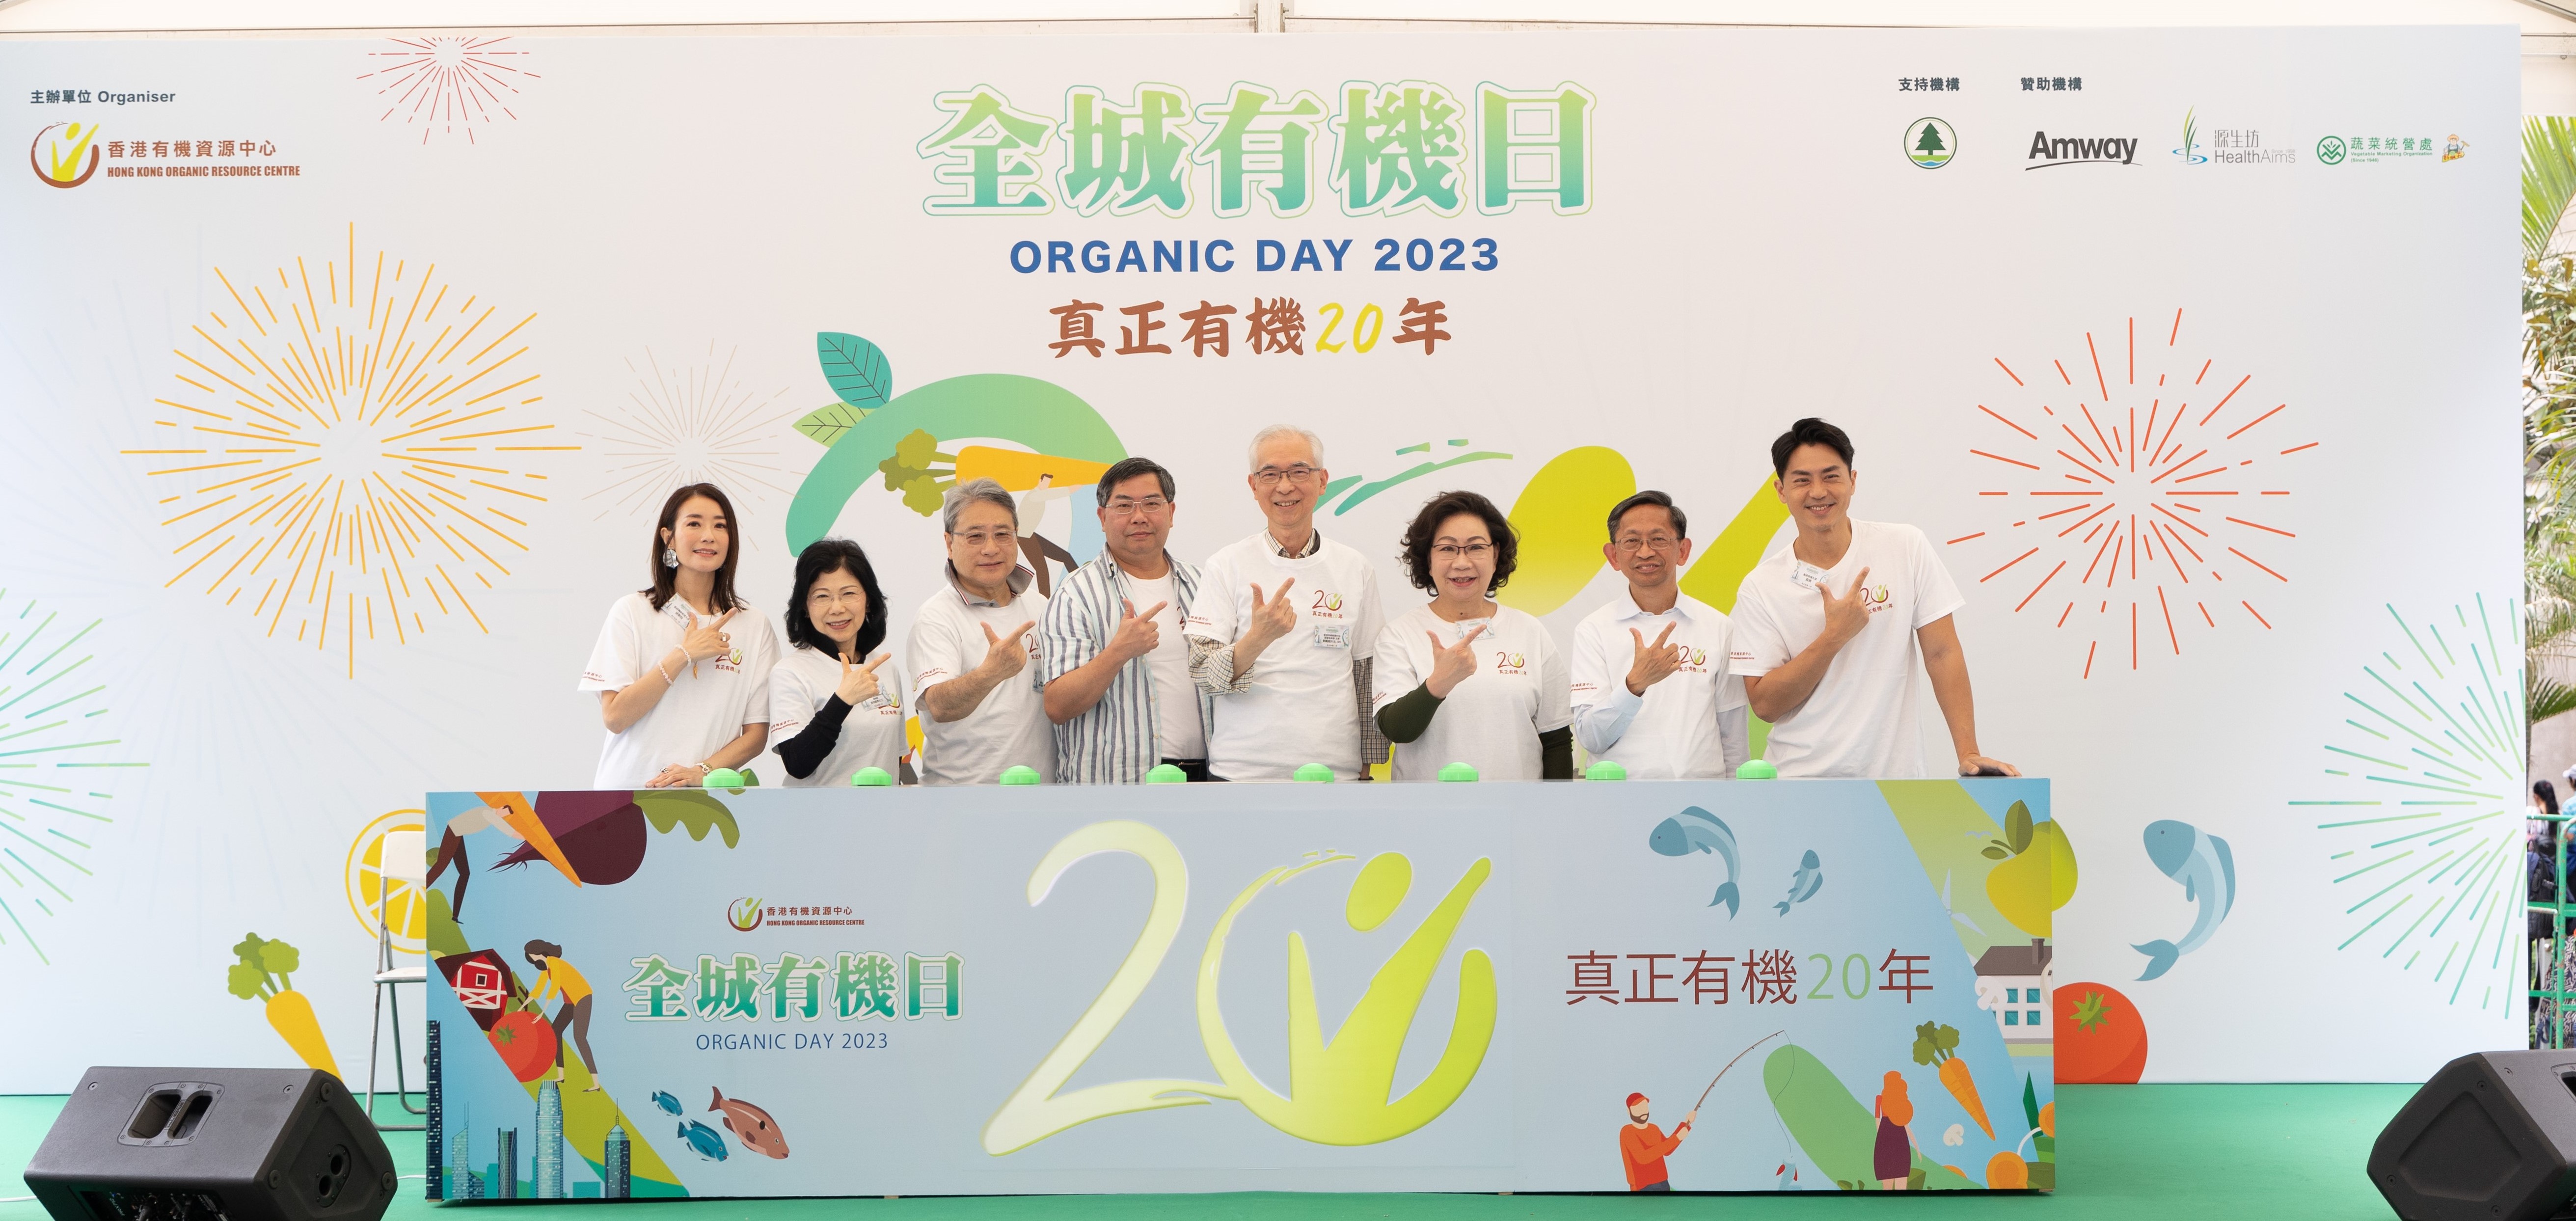 安利(香港)全力支持「全城有機日2023」- 貫徹實踐環保理念